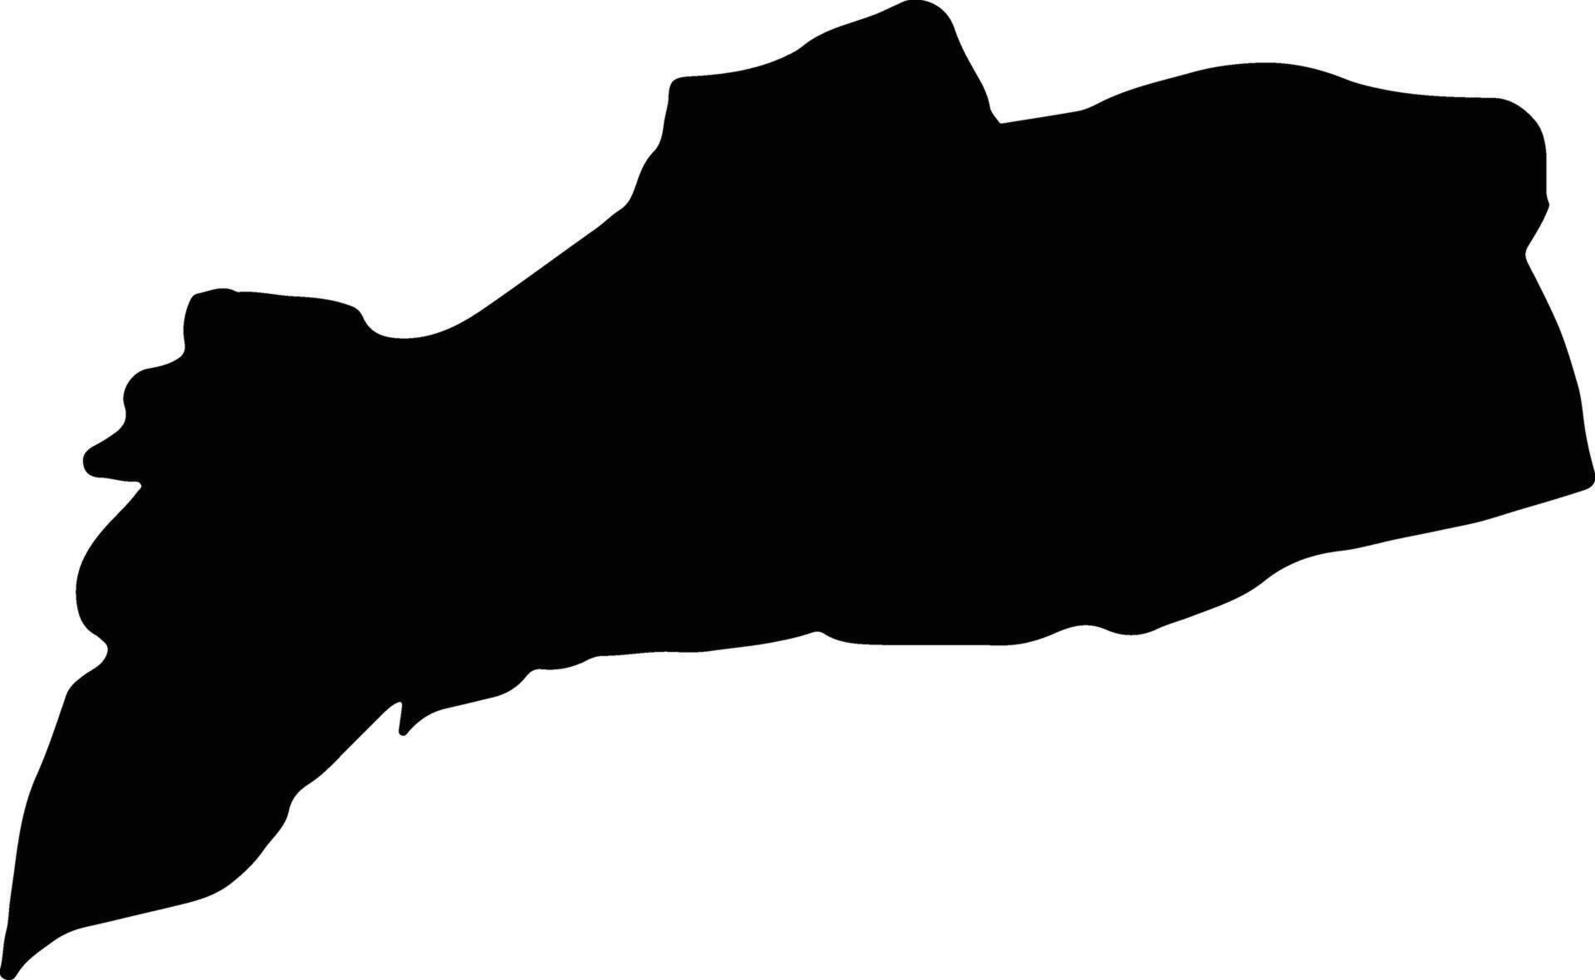 abyan yemen silhouette carta geografica vettore